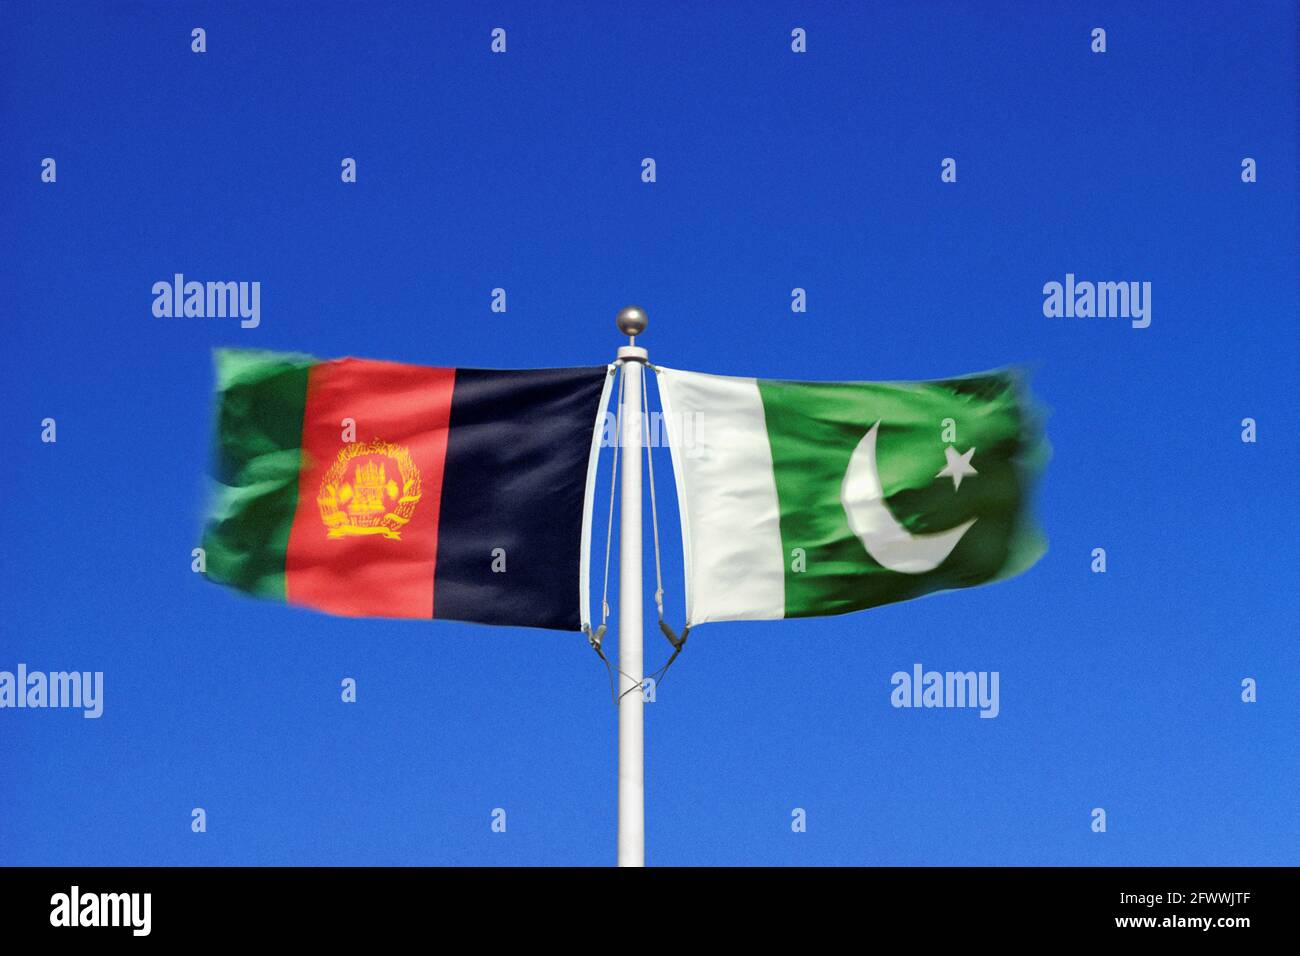 Die afghanischen und pakistanischen Flaggen winken in gegensätzlichen Winden an einem einzigen Fahnenmast Seite an Seite. Digitales Composite. Stockfoto